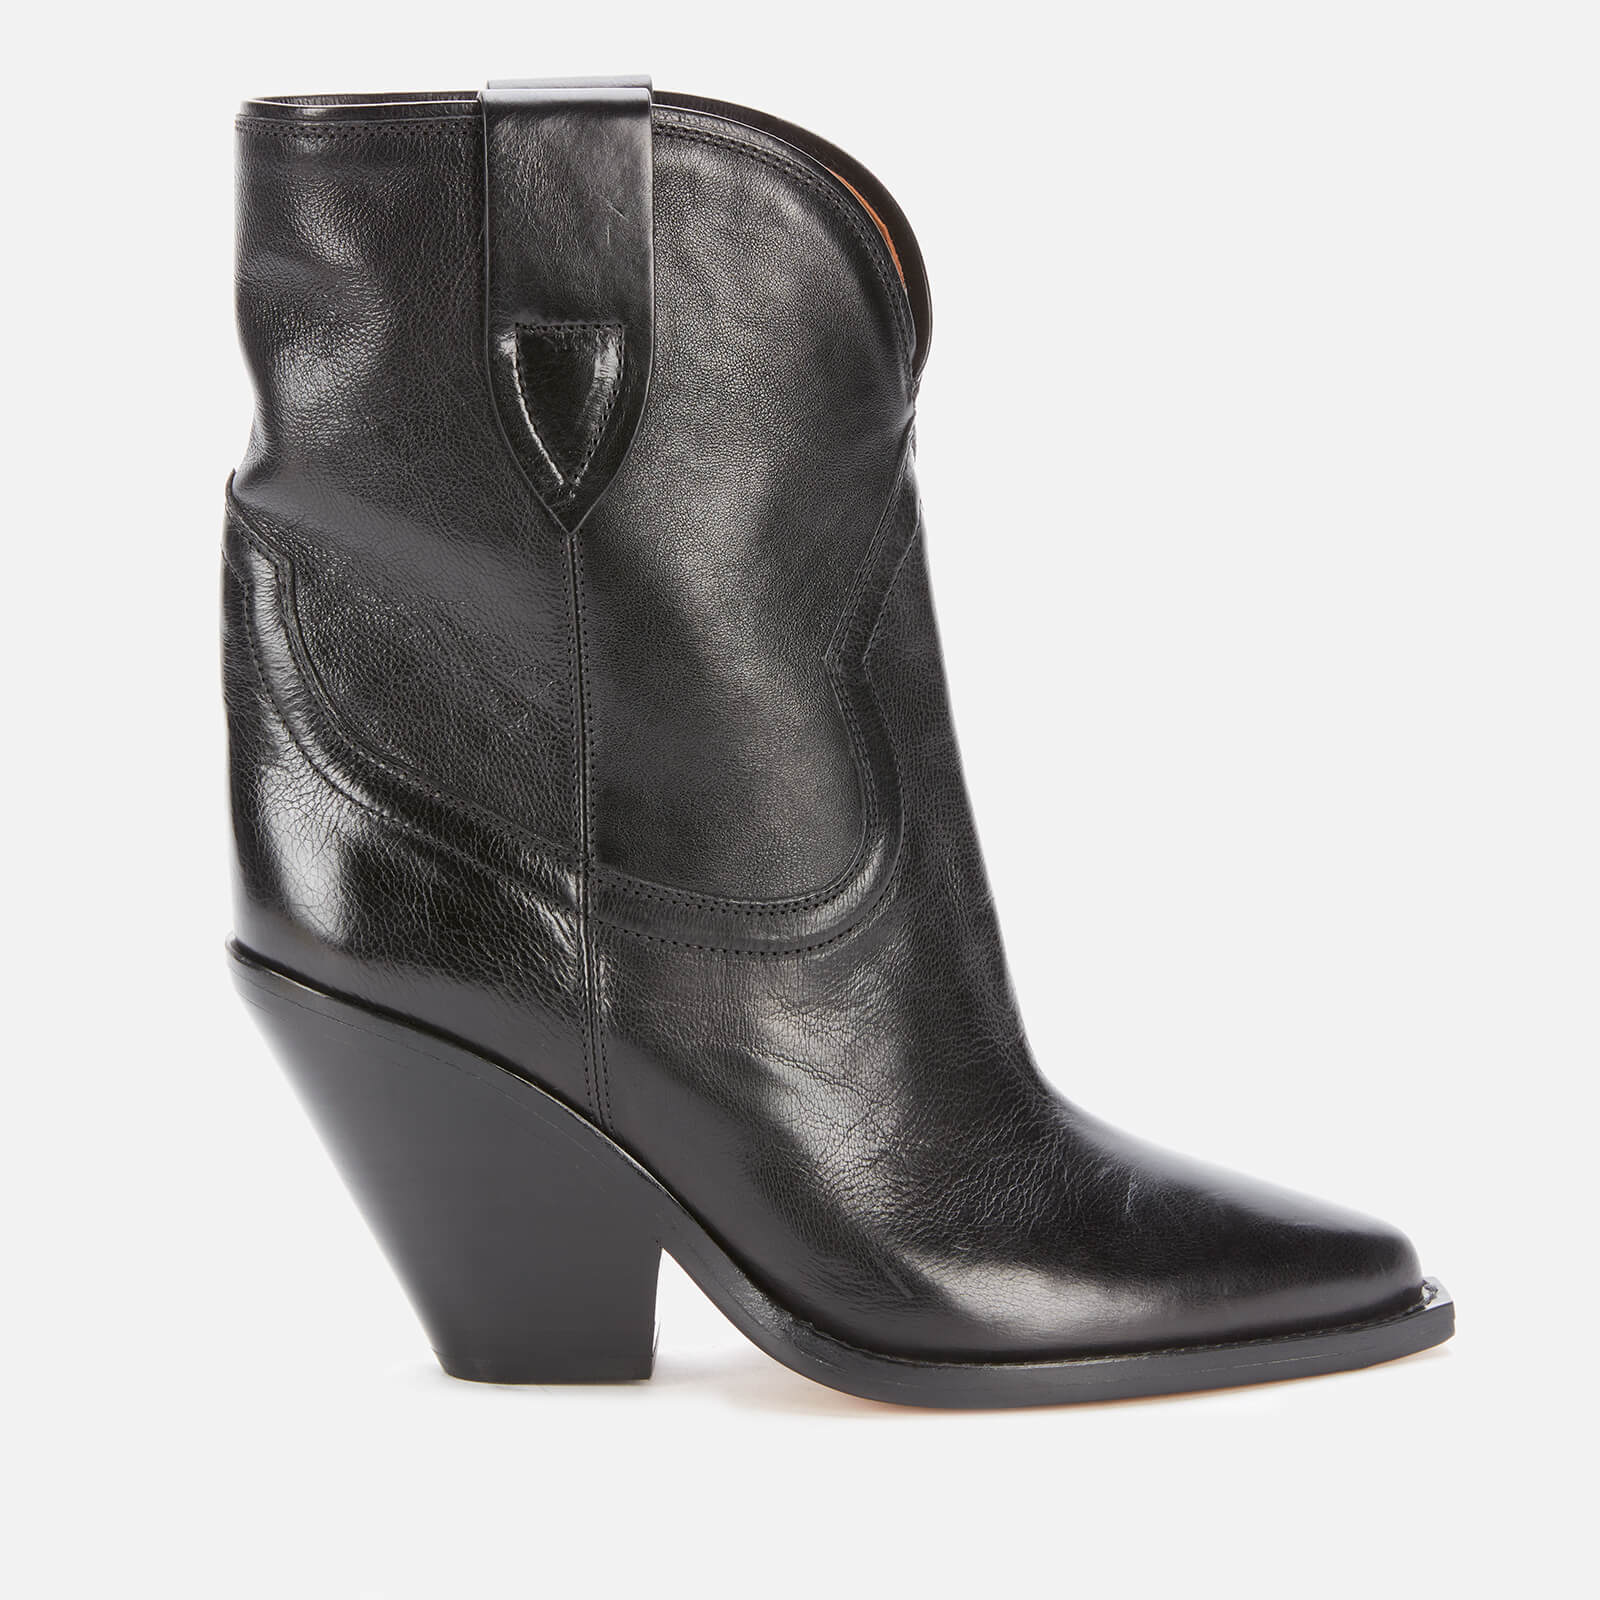 Isabel Marant Women's Leyane Leather Heeled Boots - Black - UK 4